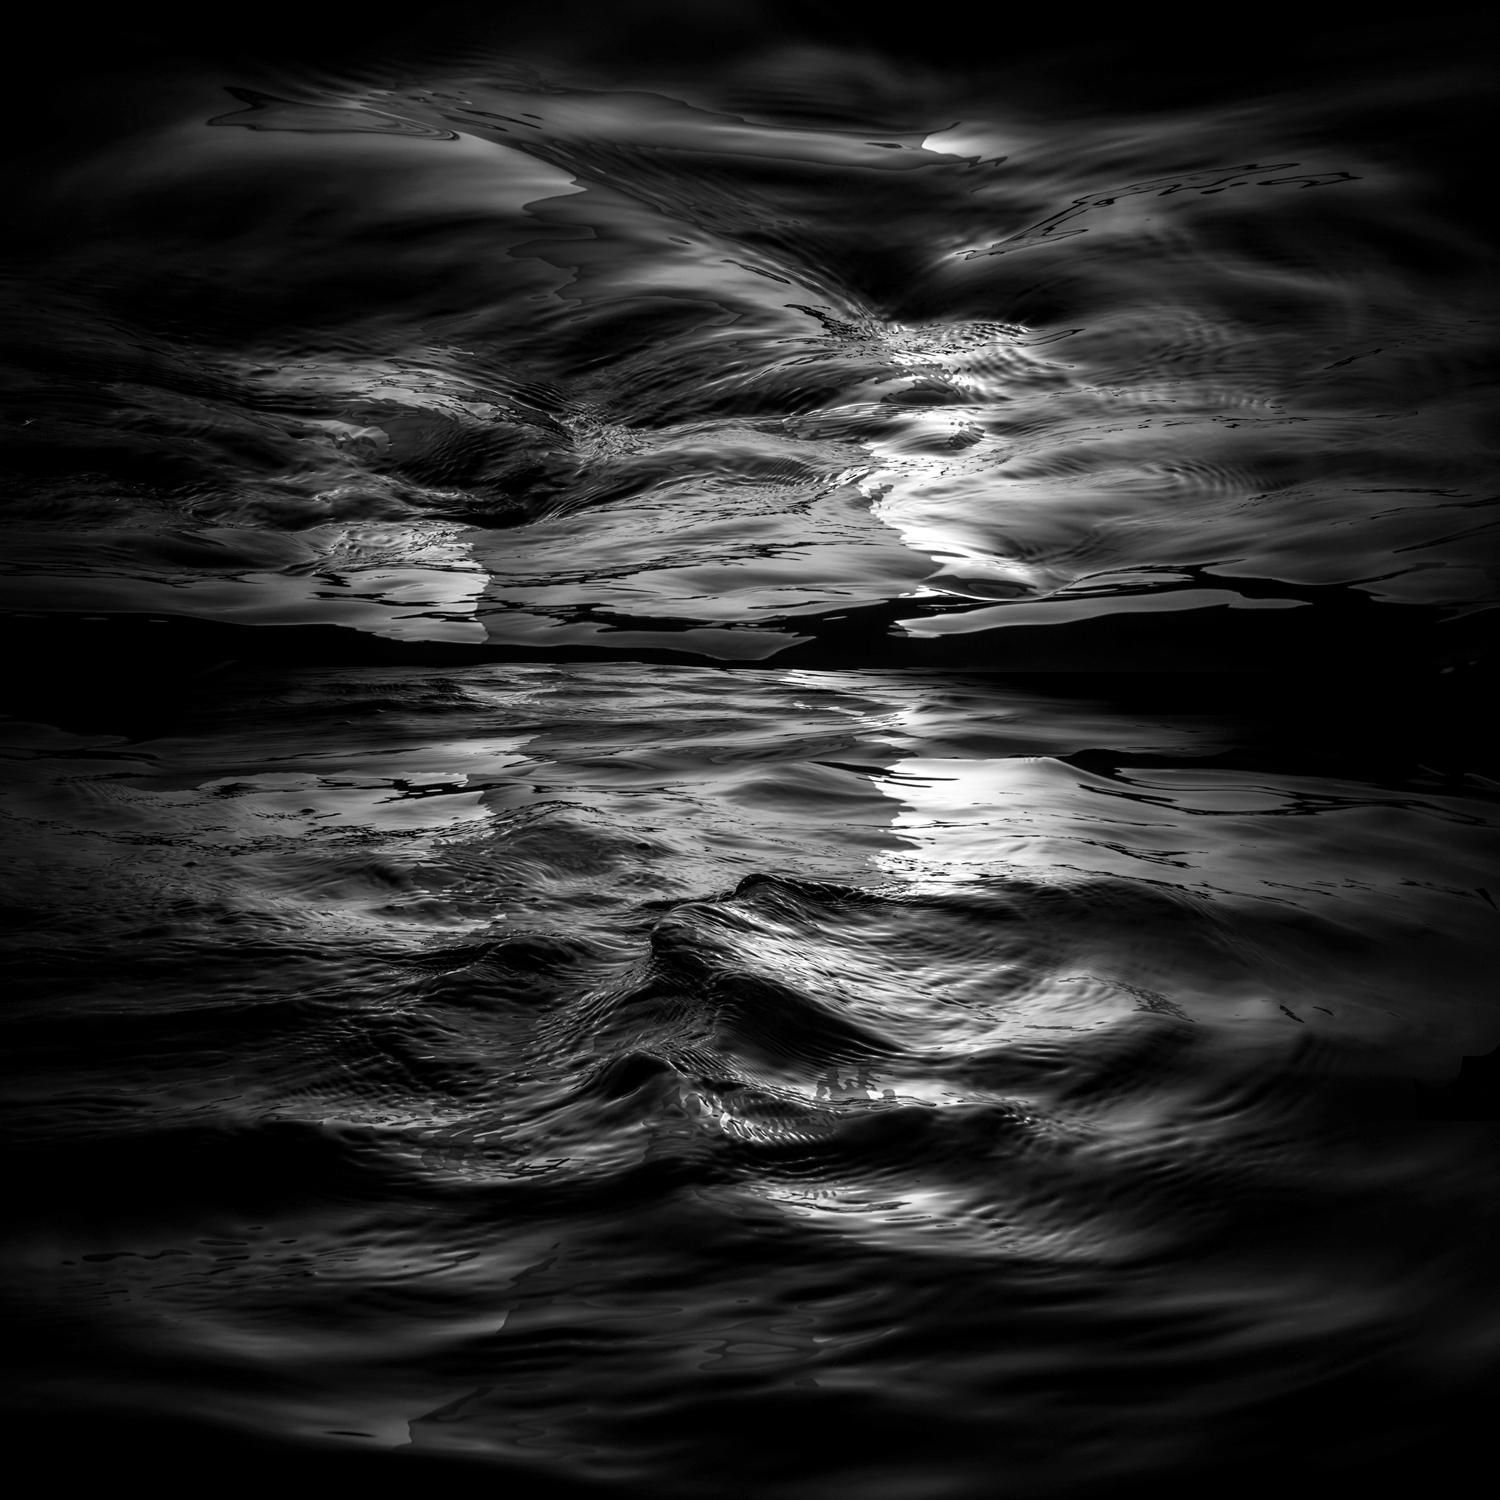 Wave II – großformatige abstrakte Fotografie von Wasseroberflächenspiegelungen